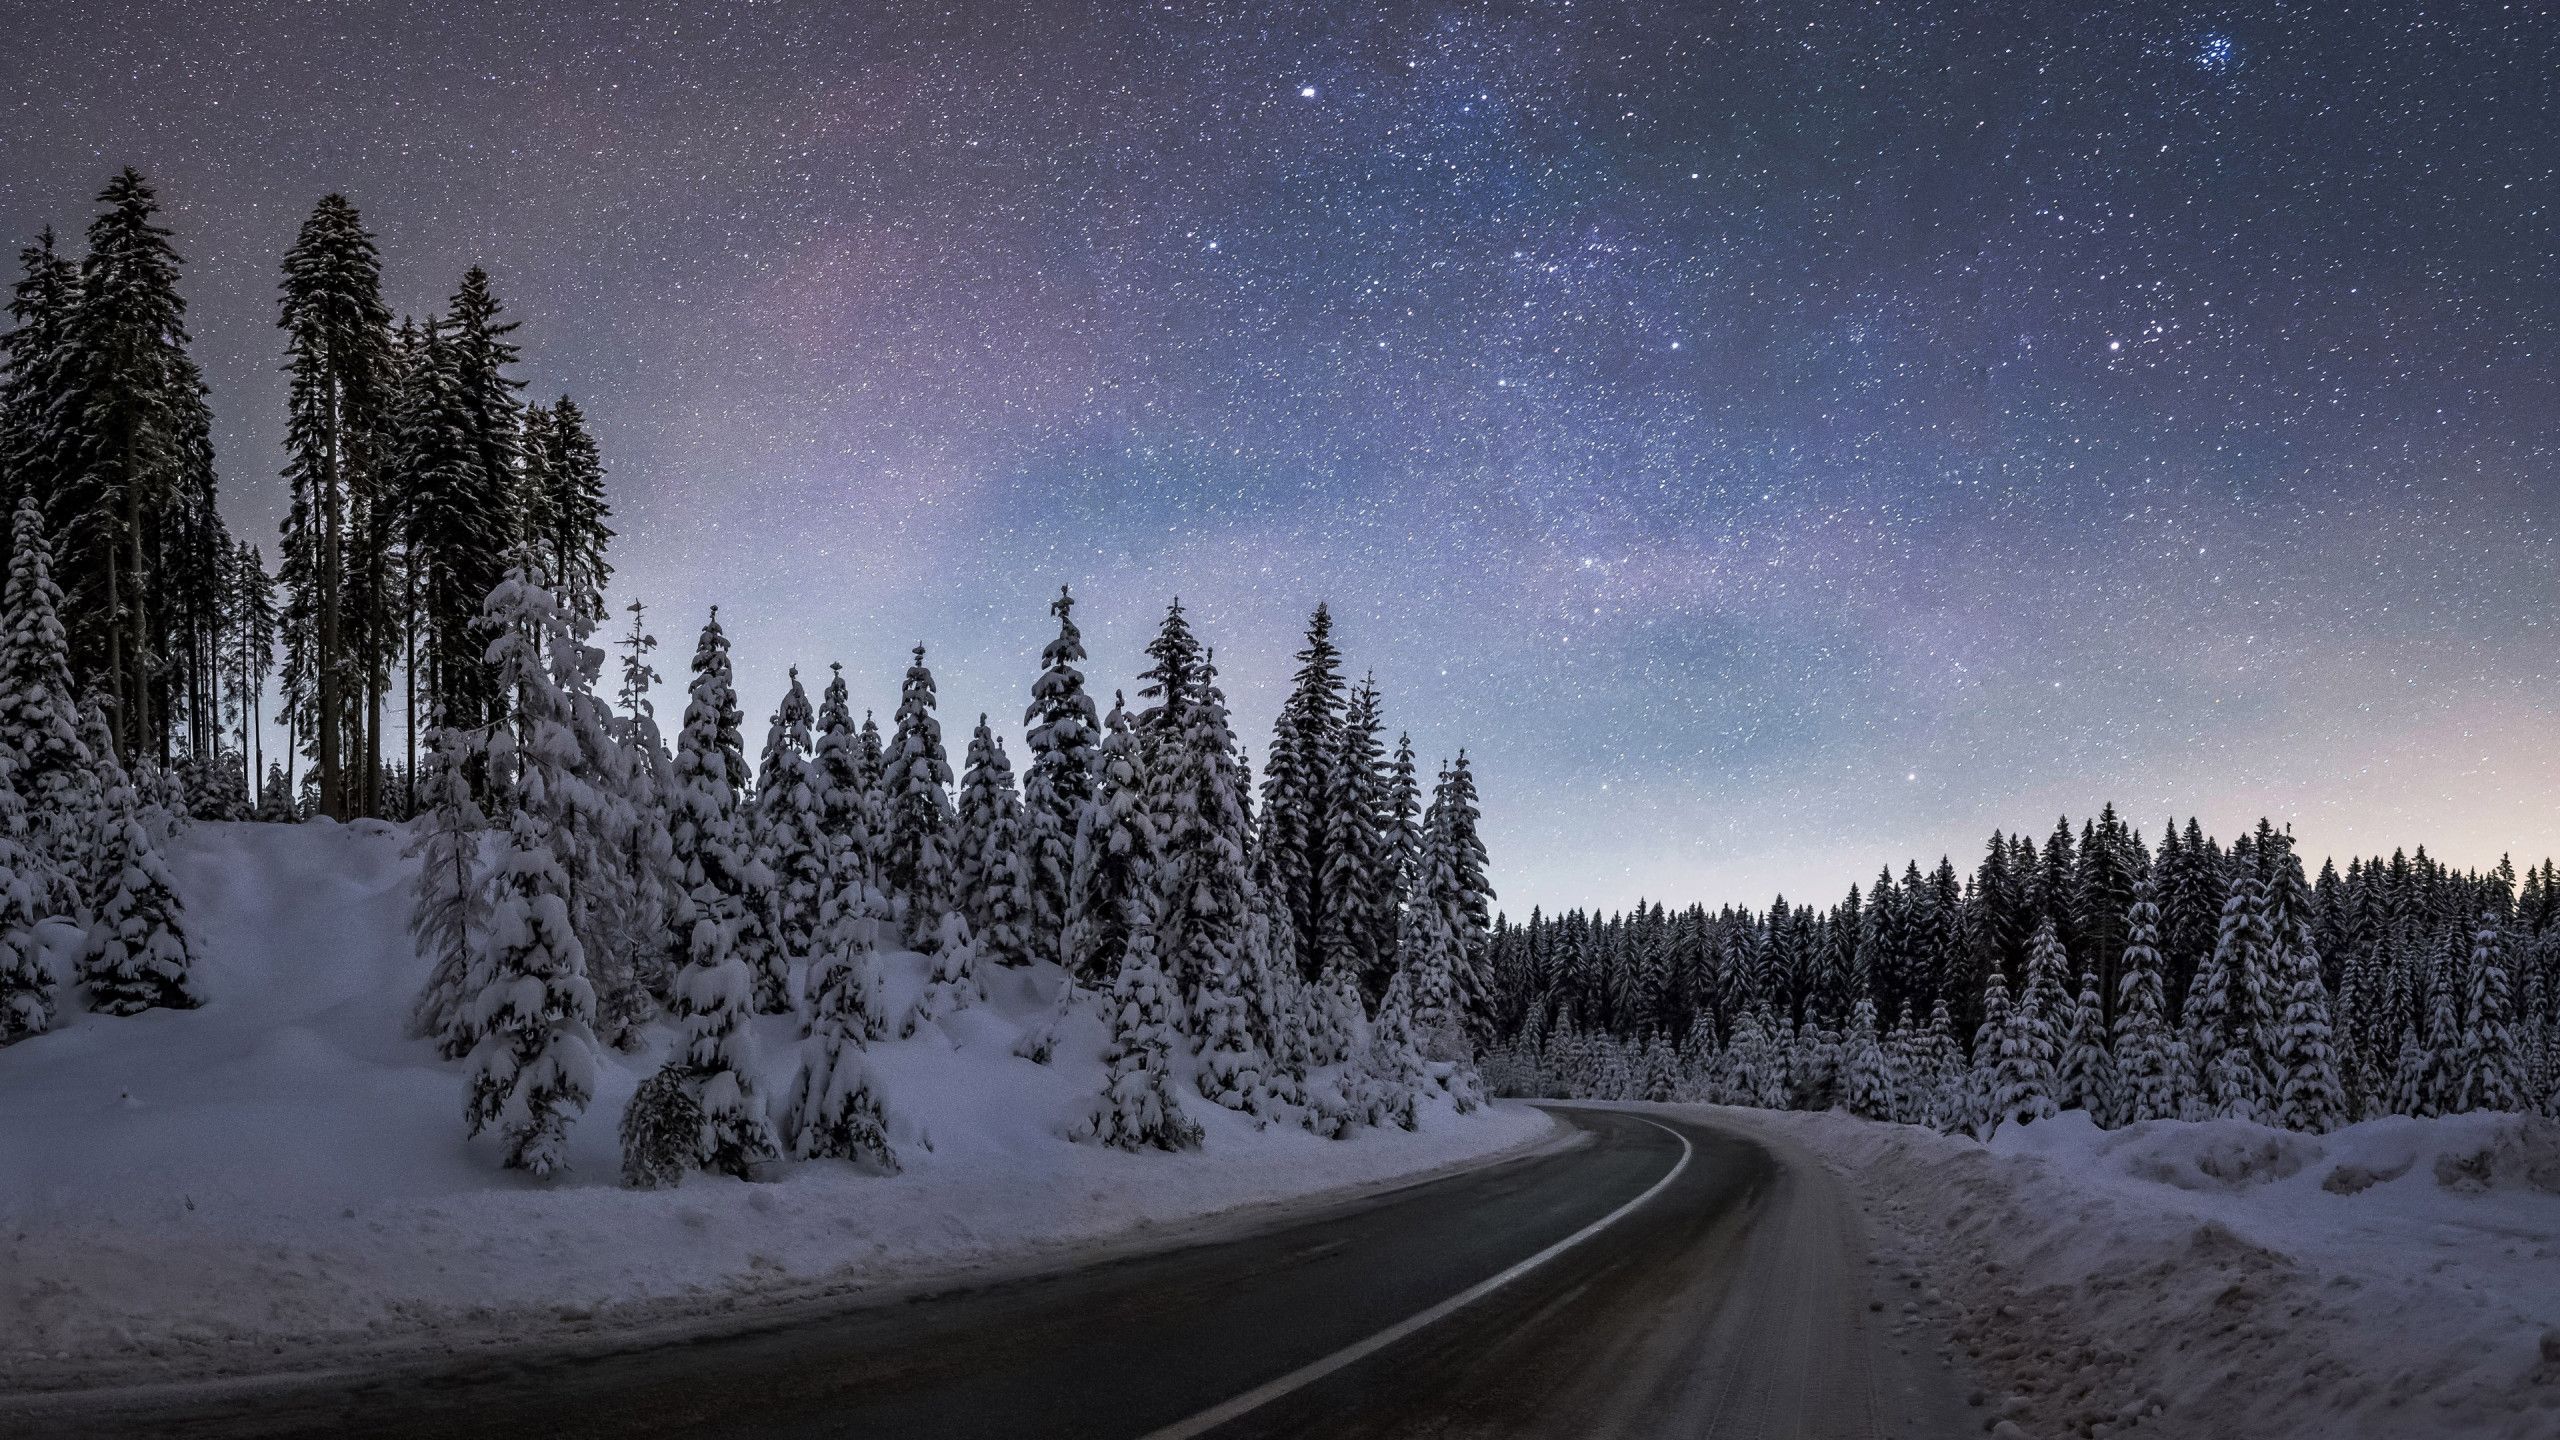 Download wallpaper: Winter night at Pokljuka forest 2560x1440